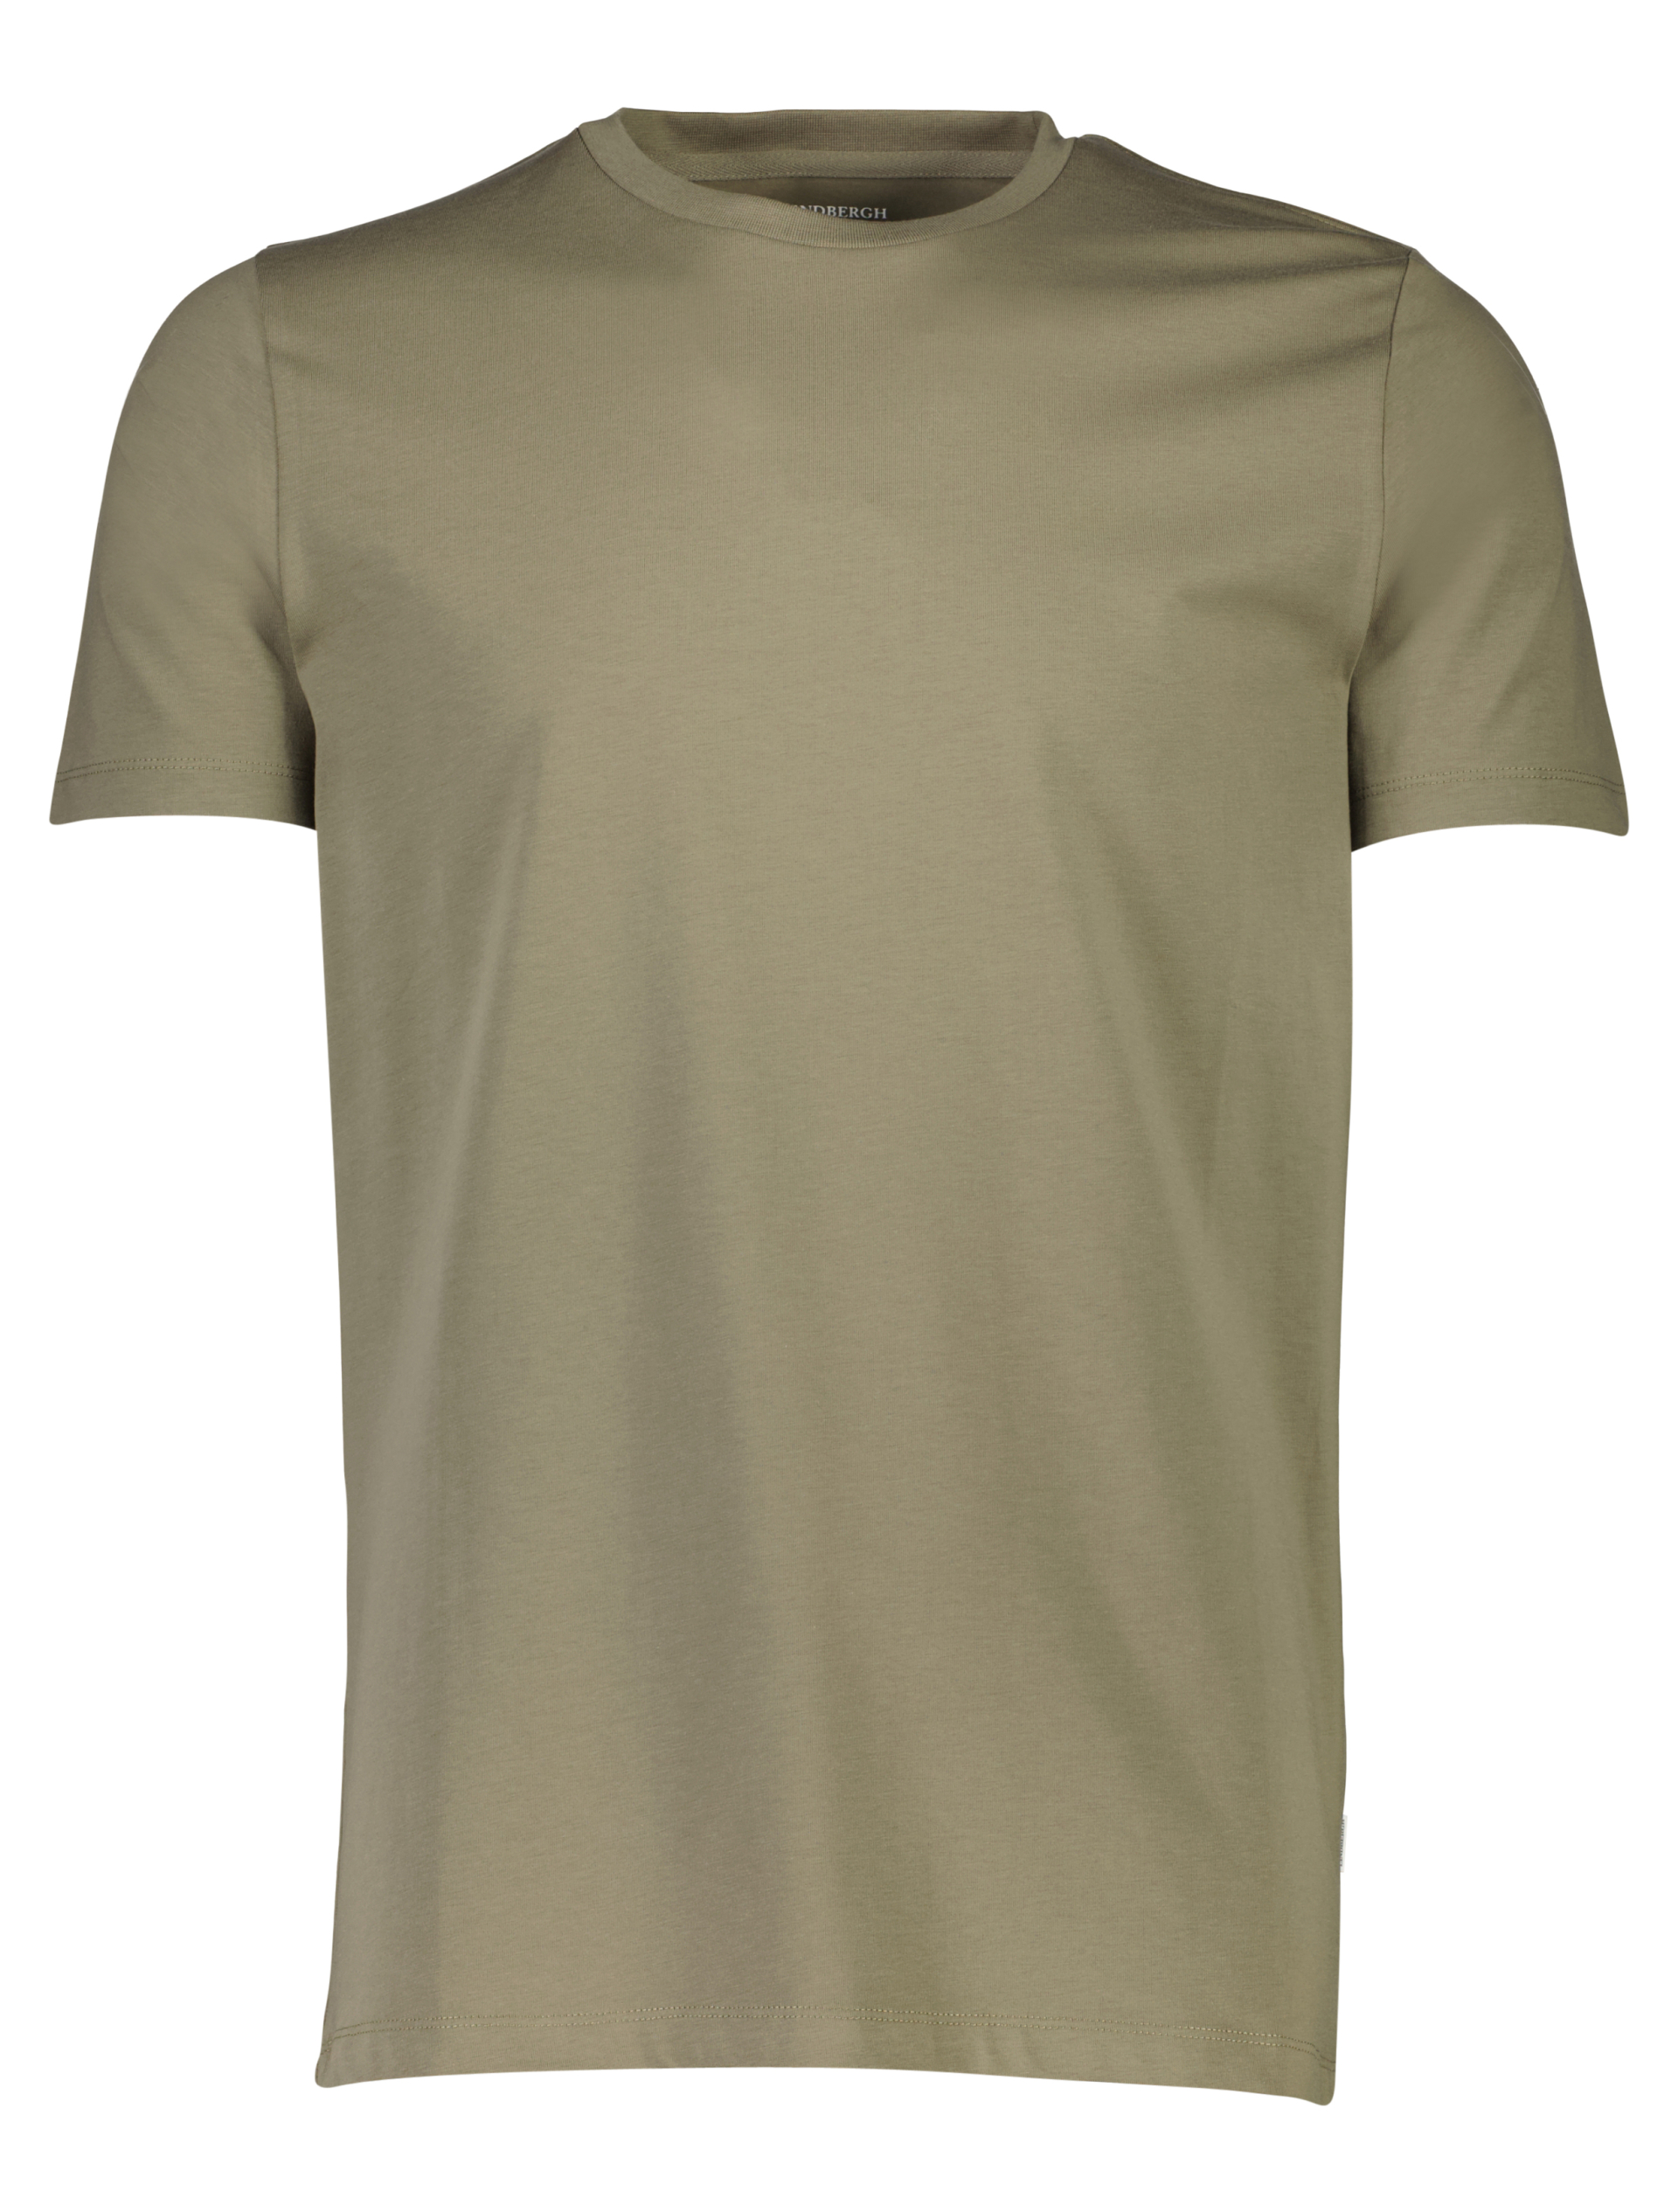 Lindbergh T-shirt grön / lt army